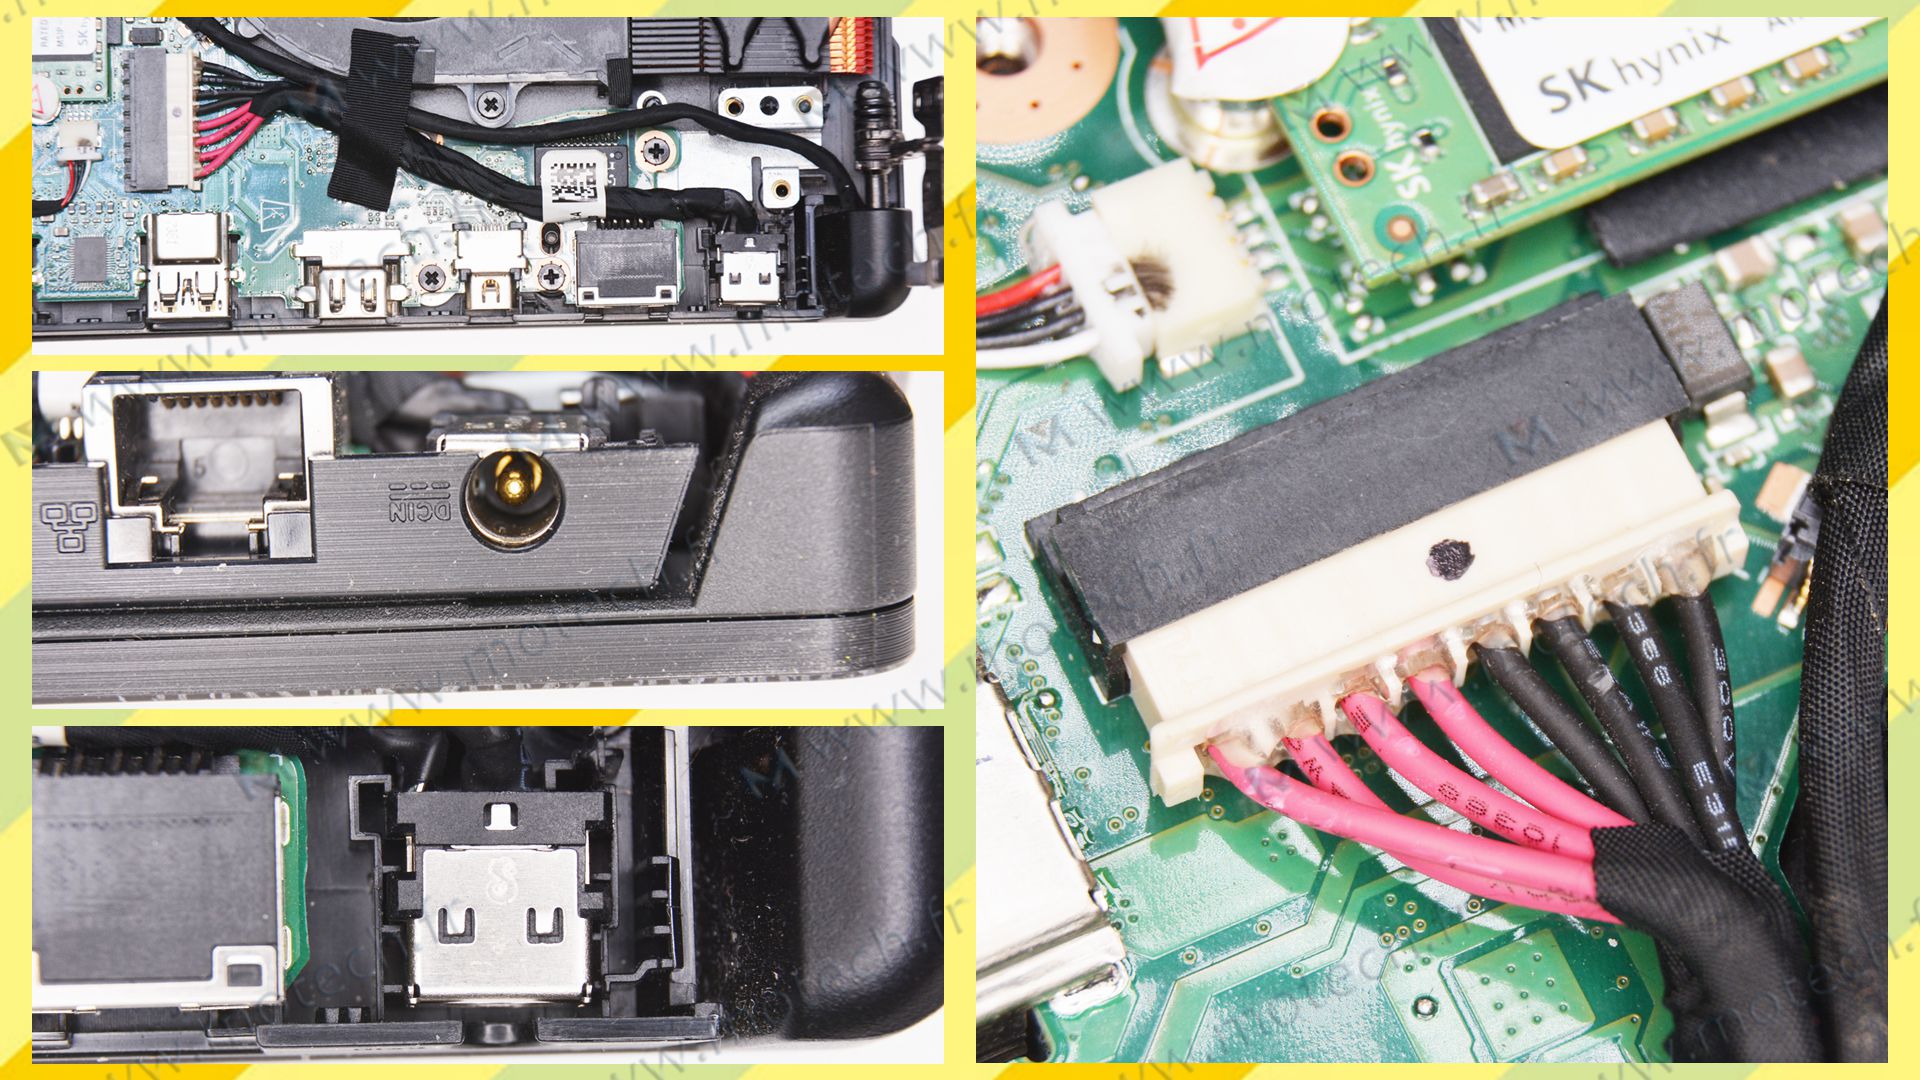 repair charging connector Asus GL503, repair DC Power Jack Asus GL503, repair DC IN Cable Asus GL503, repair Jack socket Asus GL503, repair plug Asus GL503, repair DC Alimantation Asus GL503, replace charging connector Asus GL503, replace DC Power Jack Asus GL503, replace DC IN Cable Asus GL503, replace Jack socket Asus GL503, replace plug Asus GL503, replace DC Alimantation Asus GL503,